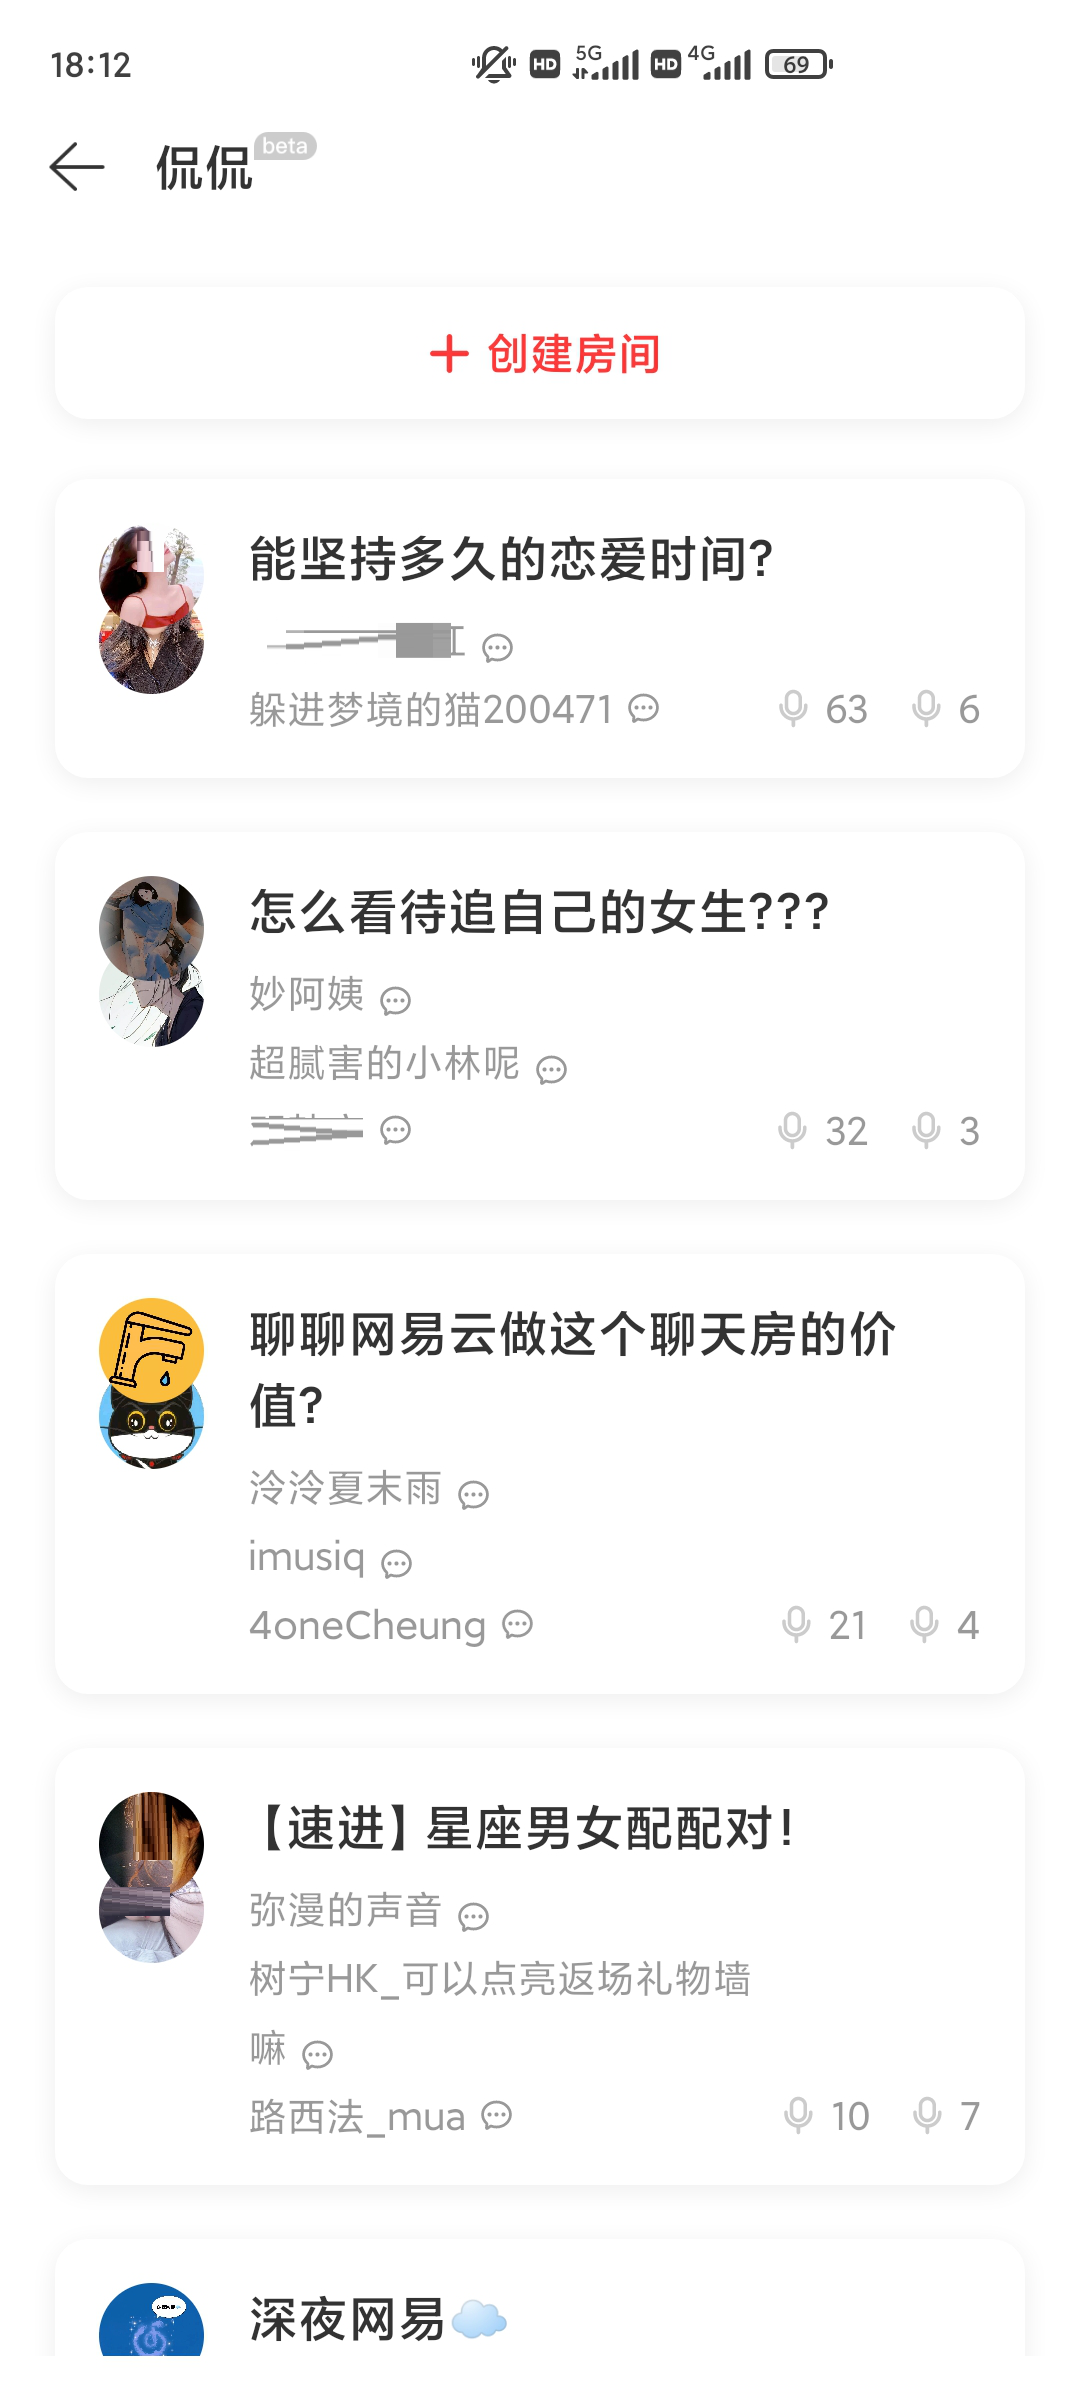 网易云音乐发布安卓8.1.31版本更新 上线音频社交功能“侃侃”